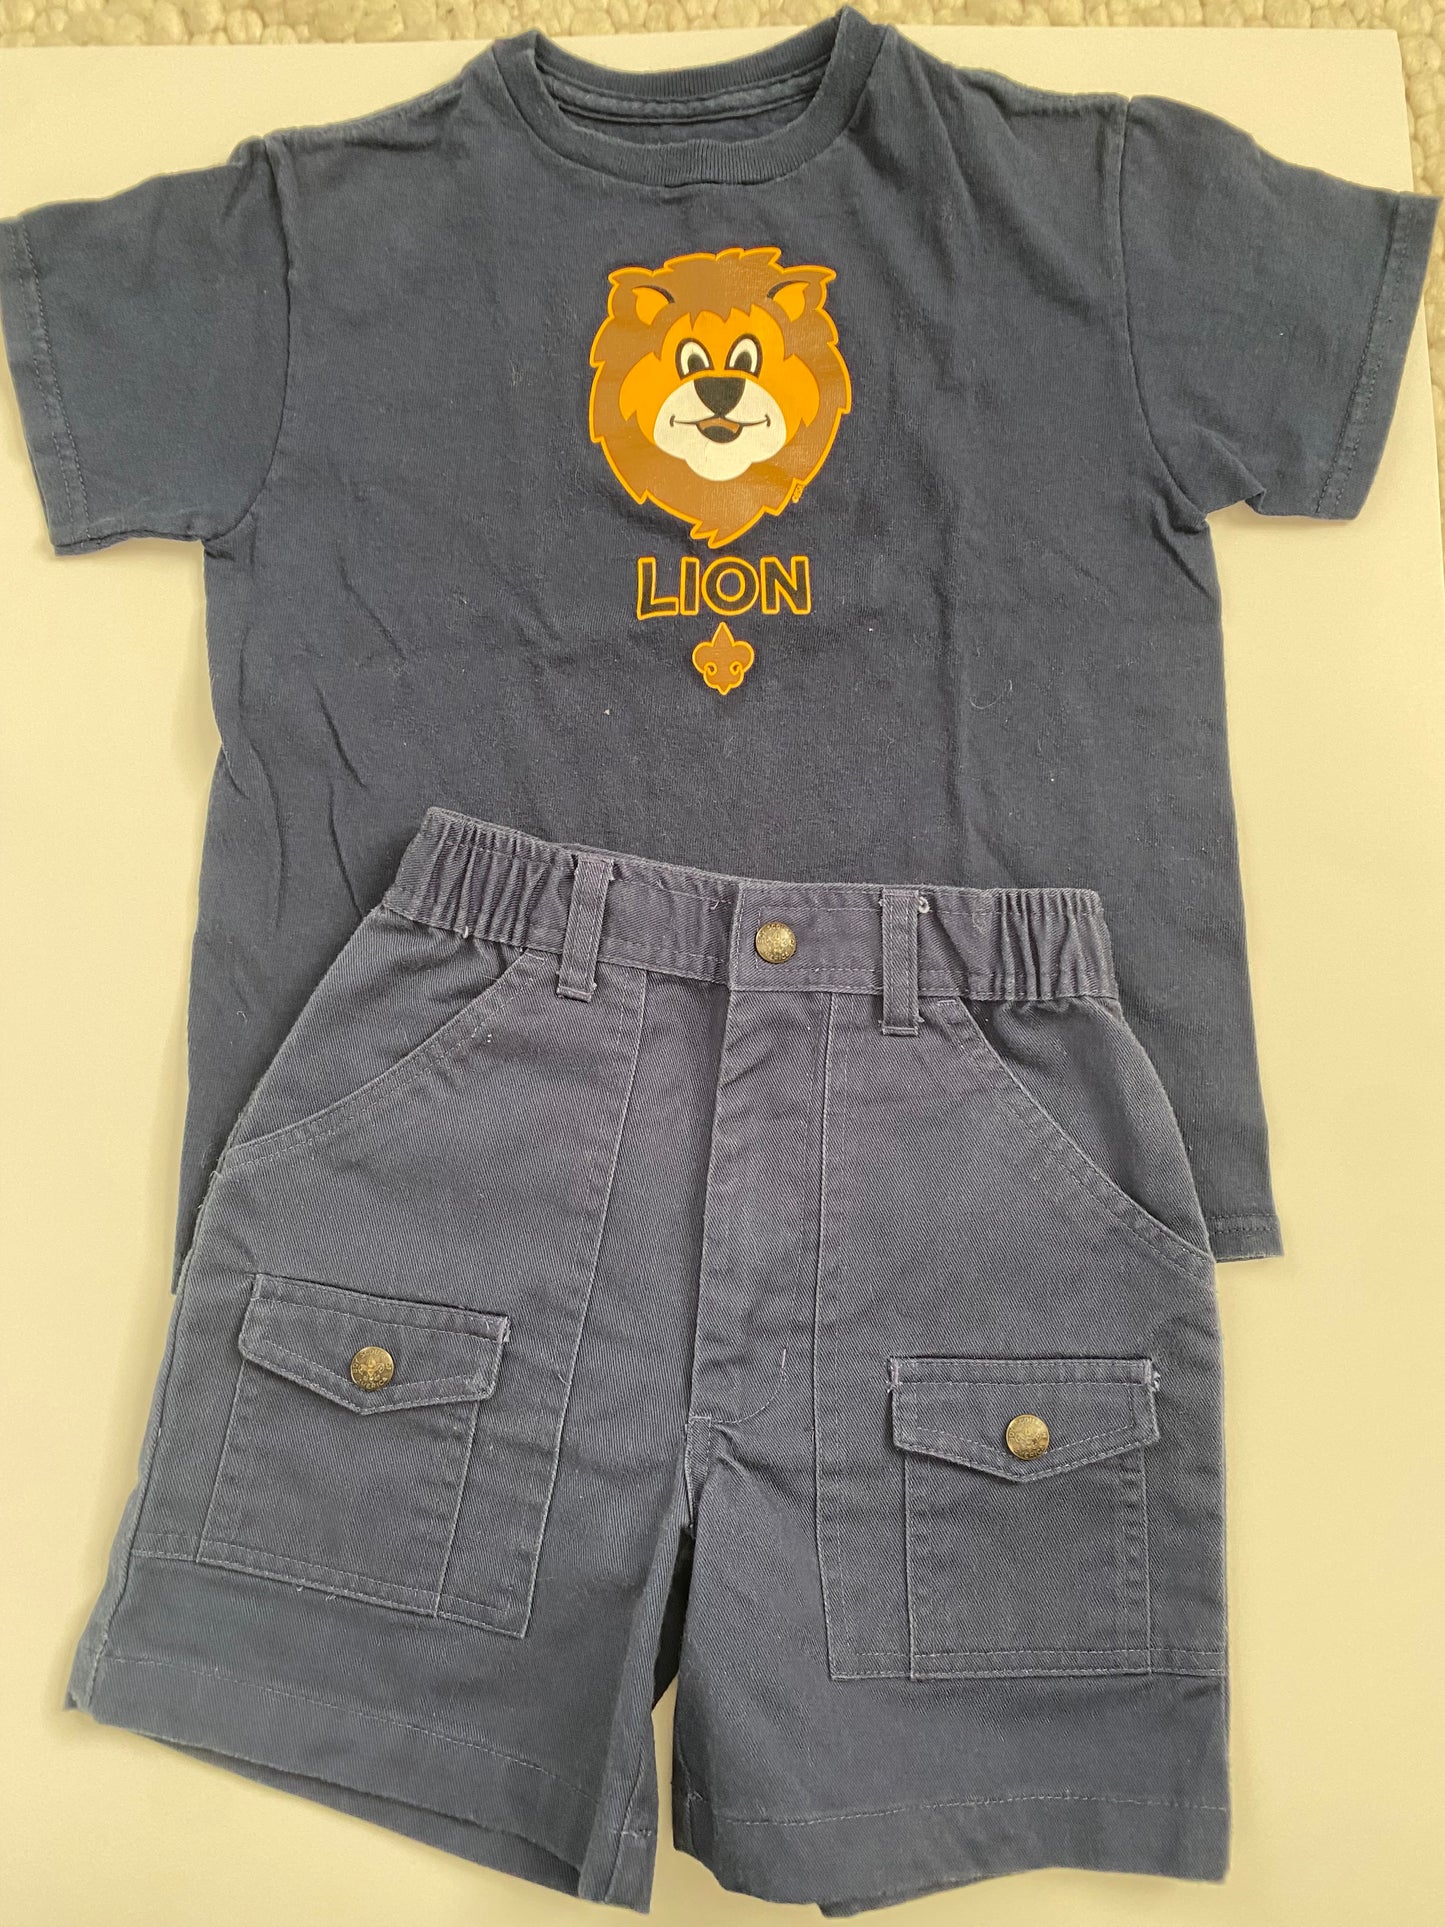 Boy Scouts Uniform for Lions size 6 PPU Mariemont